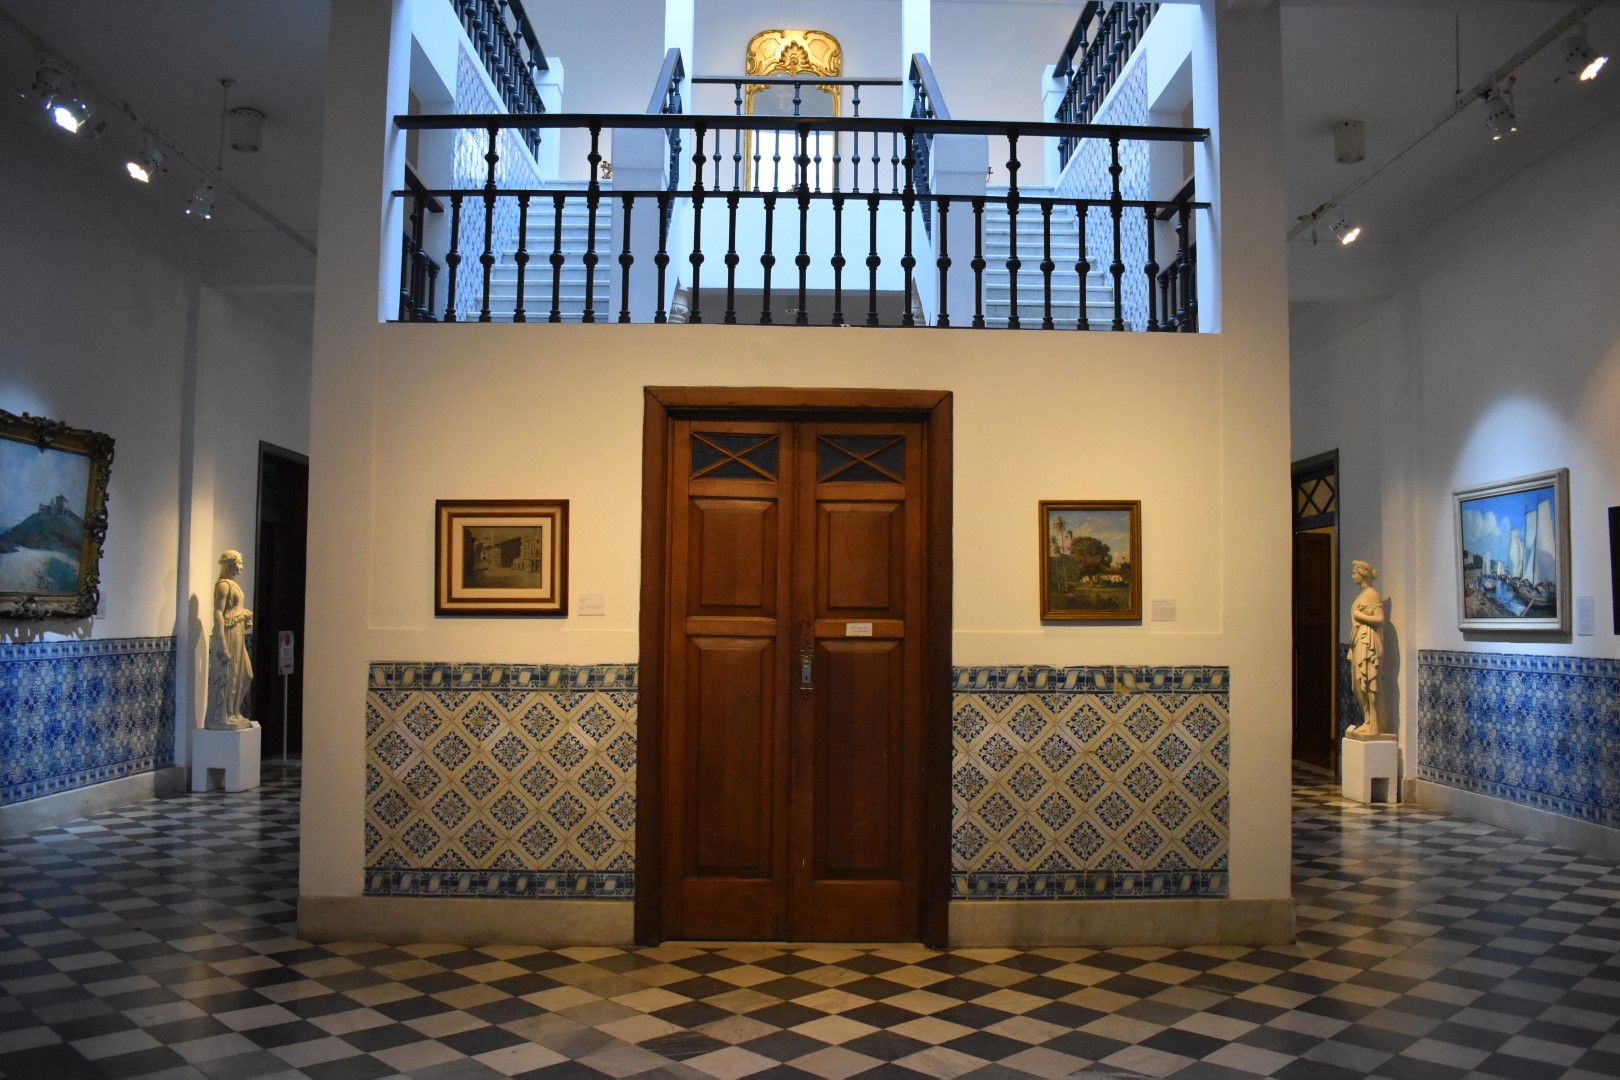 Museu de Arte da Bahia, Av. Sete de Setembro, 2340 - Corredor da Vitória, Salvador - BA